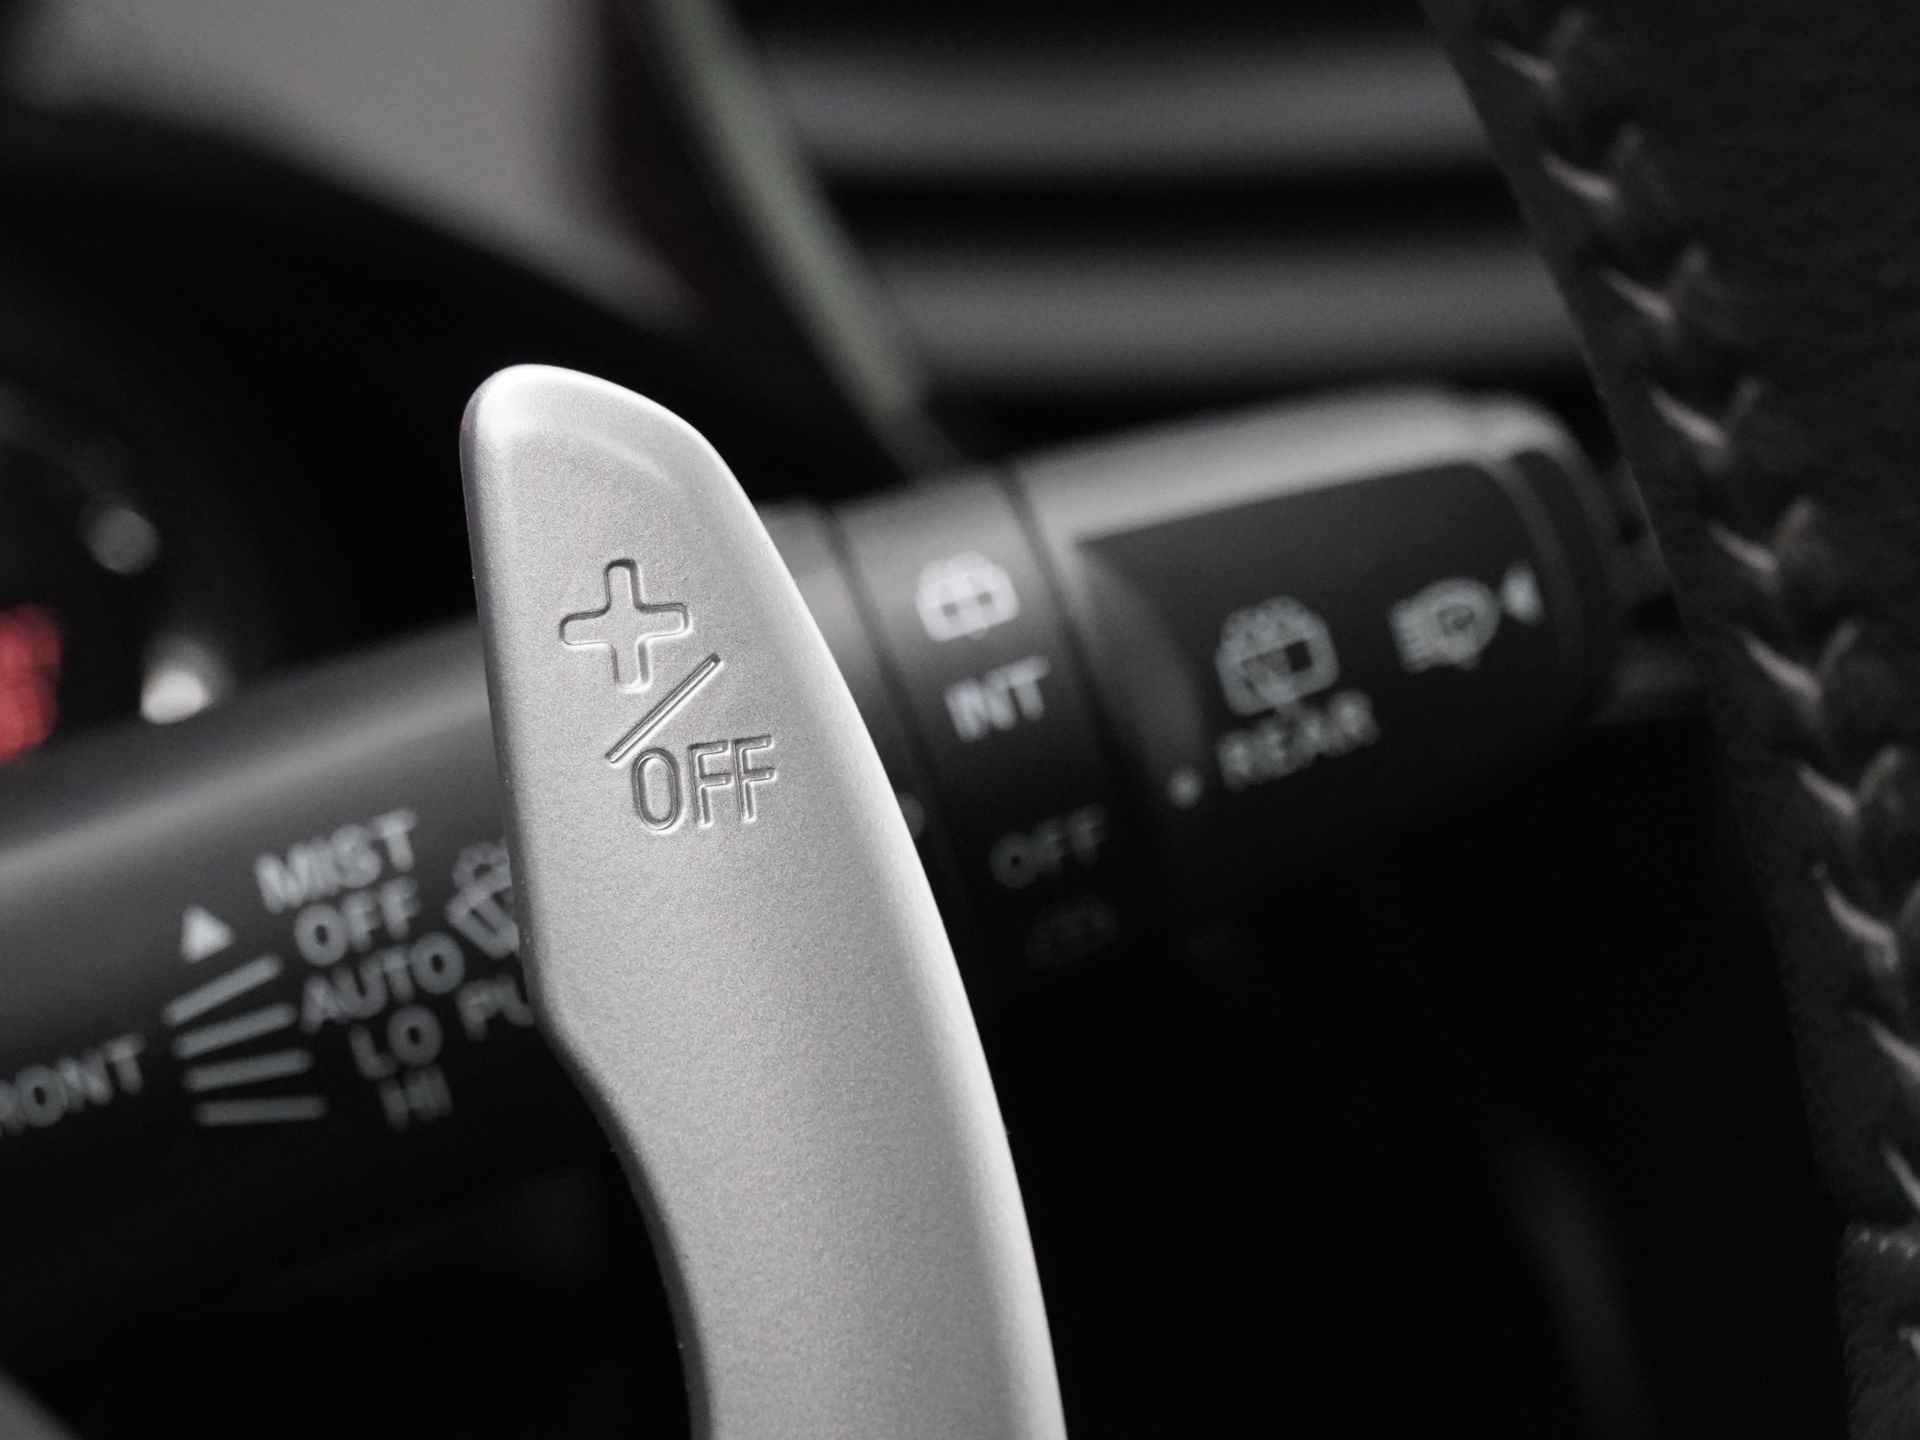 Mitsubishi Outlander 2.0 Instyle+ 4WD - Schuifkanteldak - Lederen bekleding - Voorraam verwarming - Apple CarPlay / Android Auto - Elektrische achterklep - 12 Maanden bovag garantie - 27/48